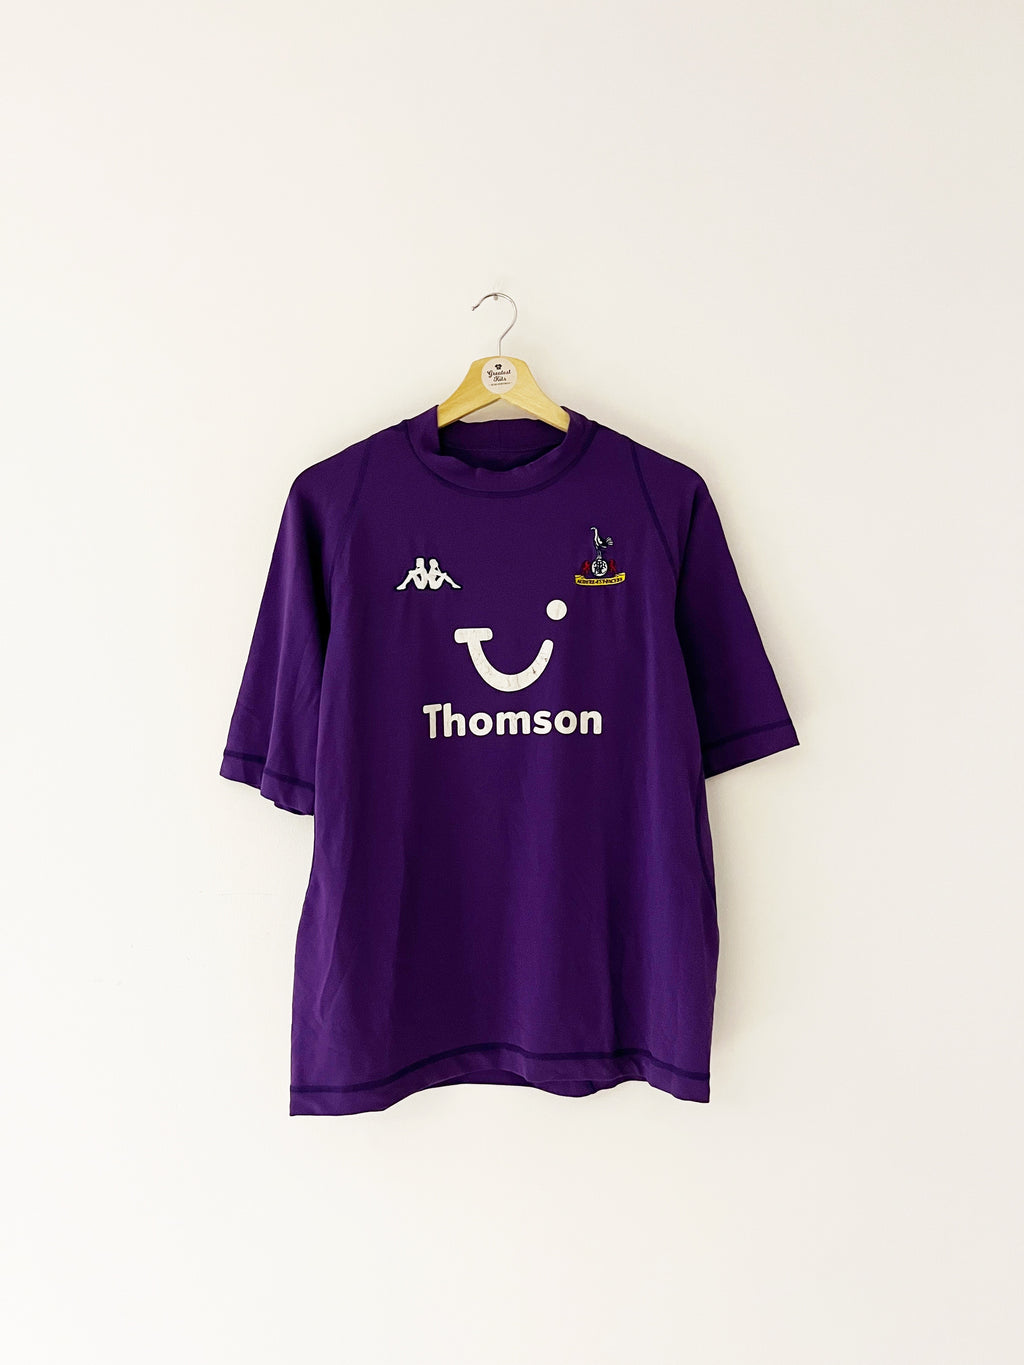 Tottenham Hotspur 2003-04 Home Kit